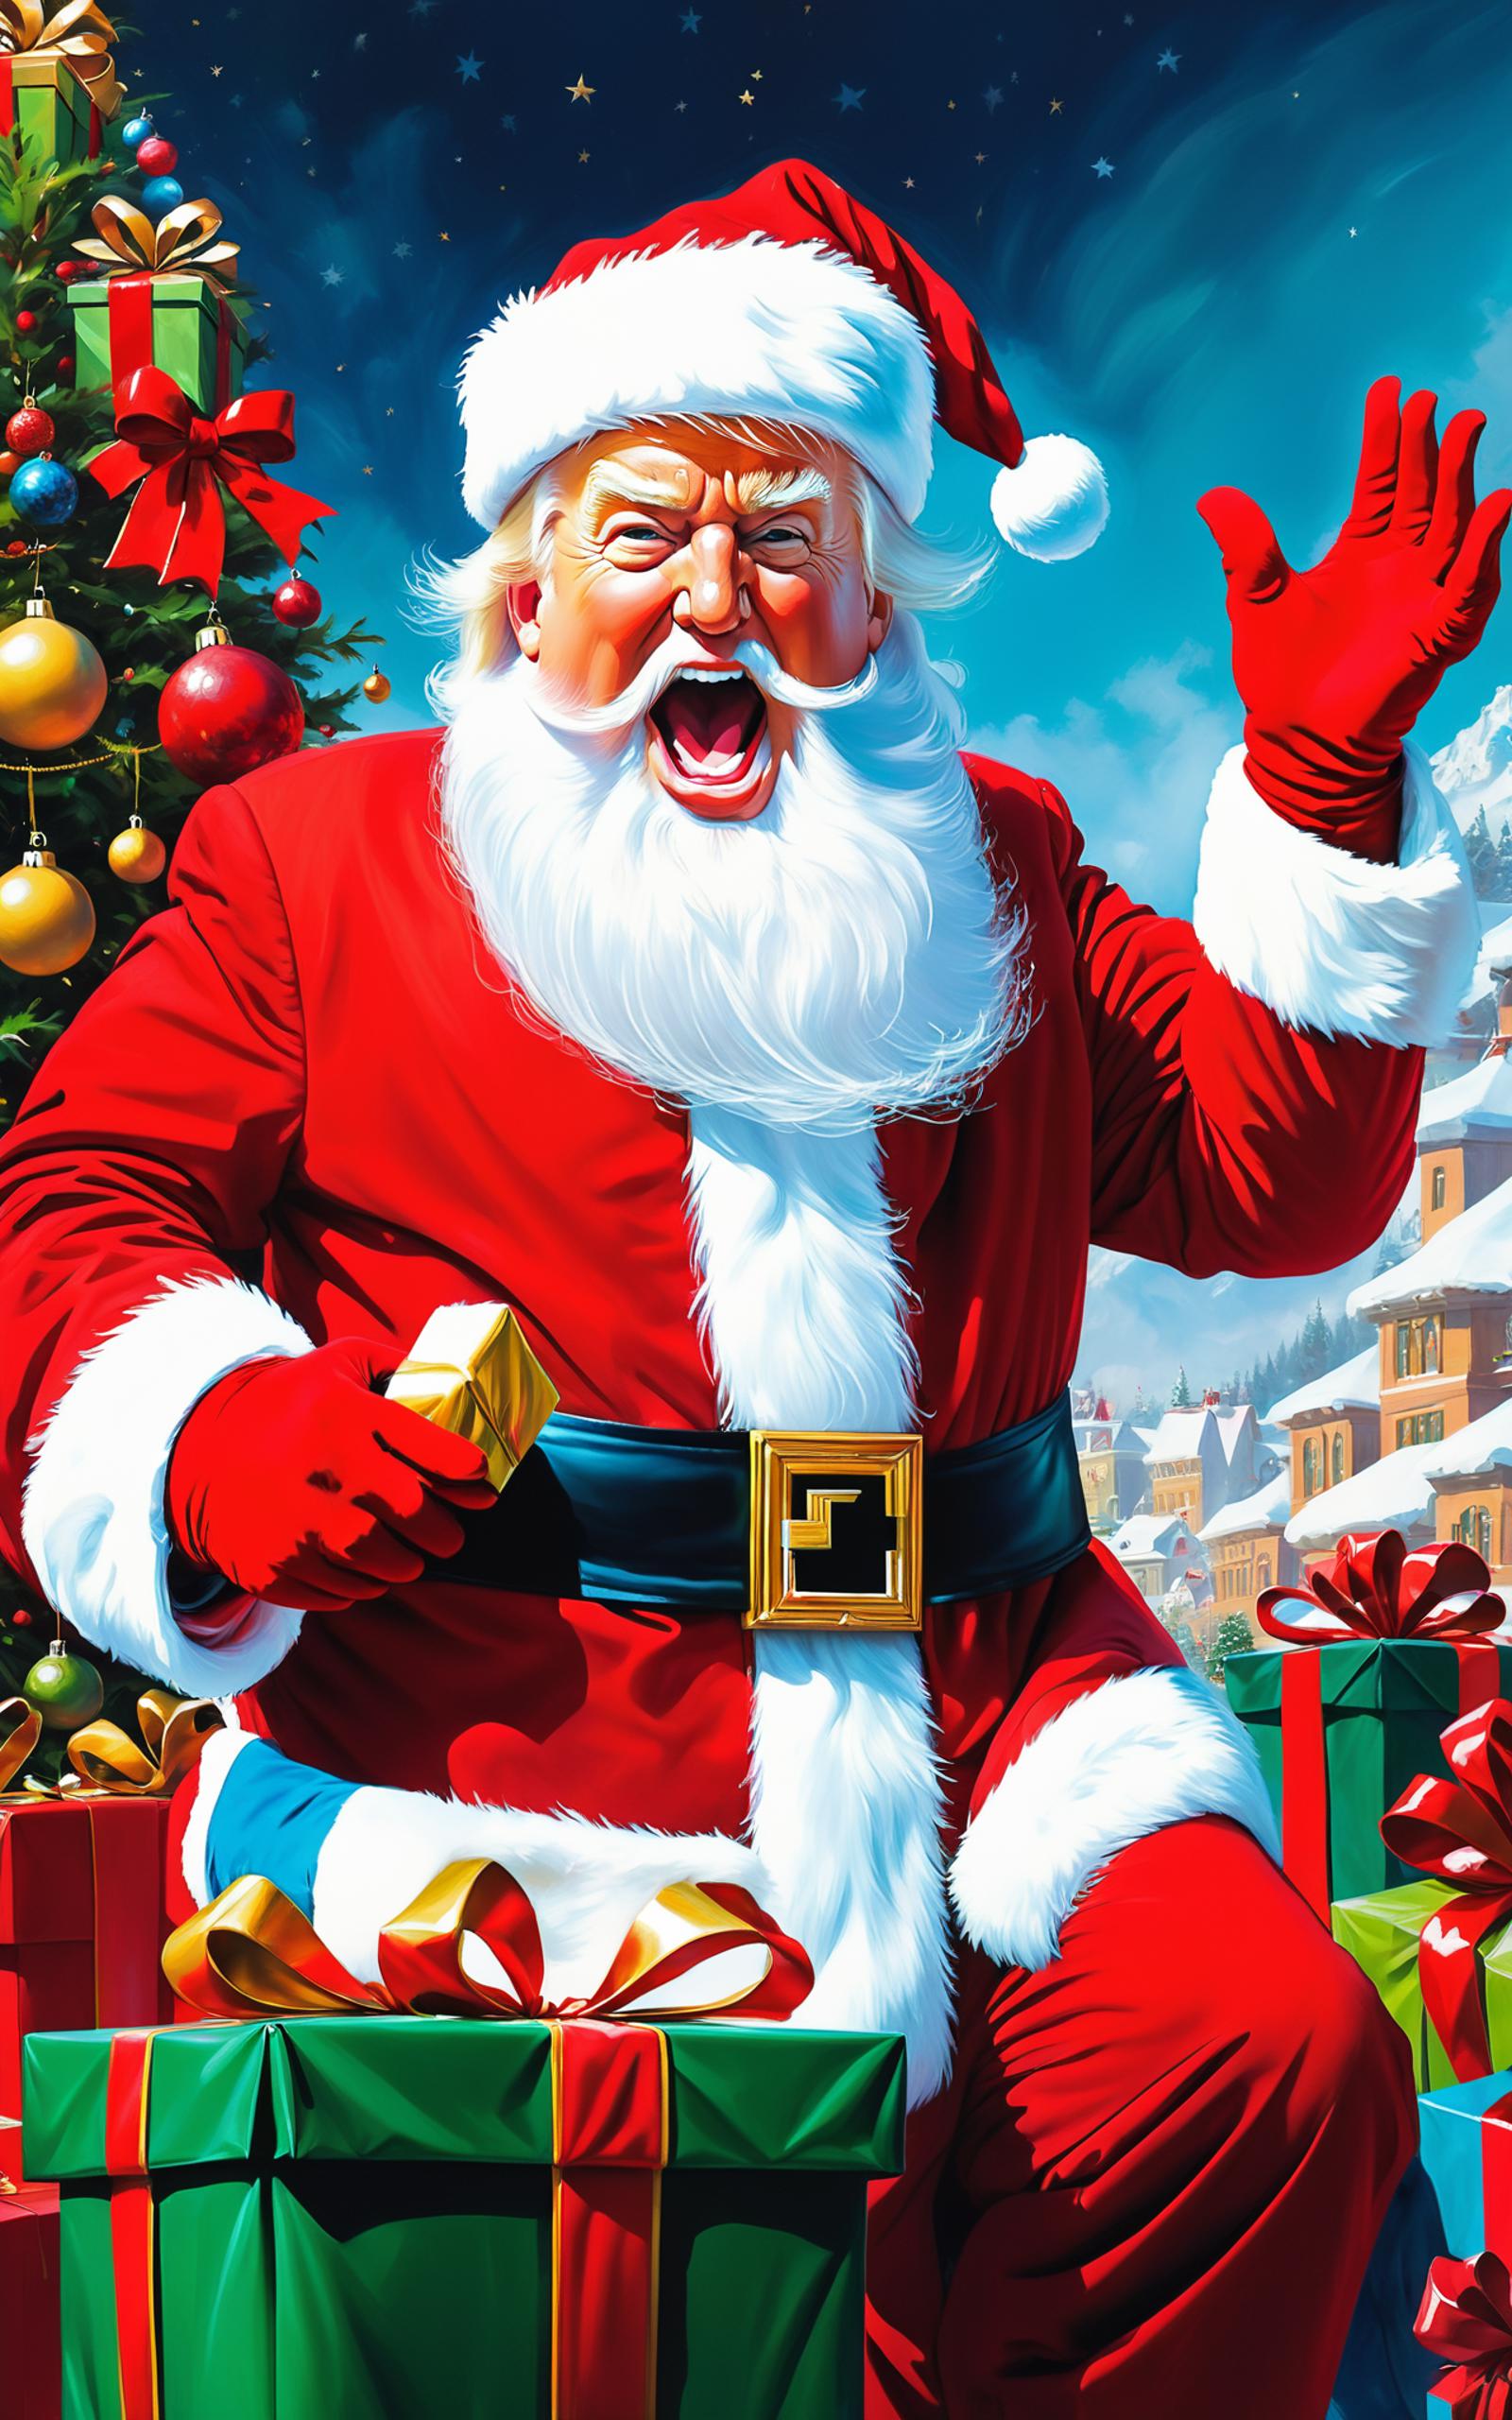 A Cartoon Santa Claus with a Big Mouth.